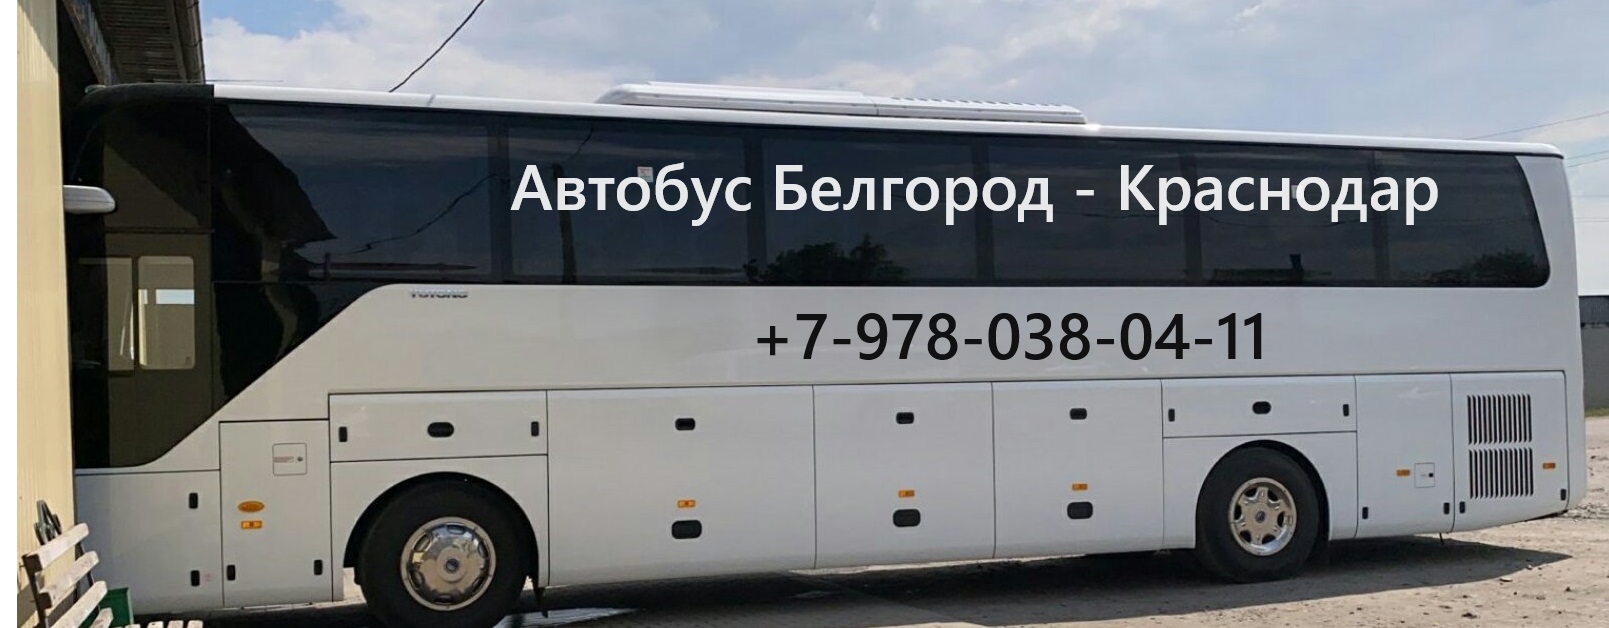 Автобус Белгород-Краснодар